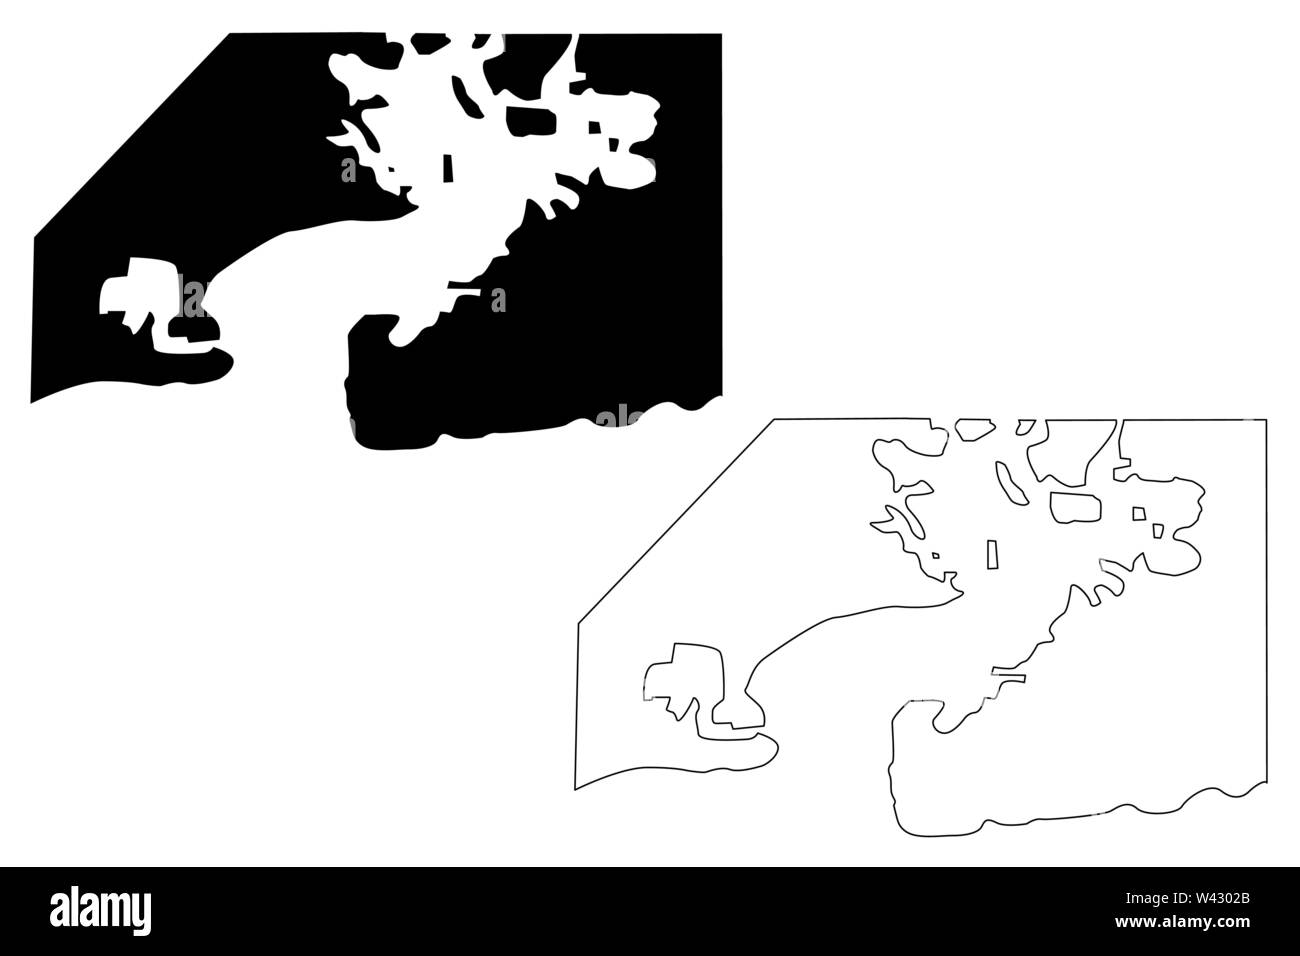 Guantanamo Bay Naval Base (Repubblica di Cuba, Stati Uniti d'America) mappa illustrazione vettoriale, scribble schizzo Guantanamo Bay (NSGB, GTMO, Gitmo, Nav Illustrazione Vettoriale